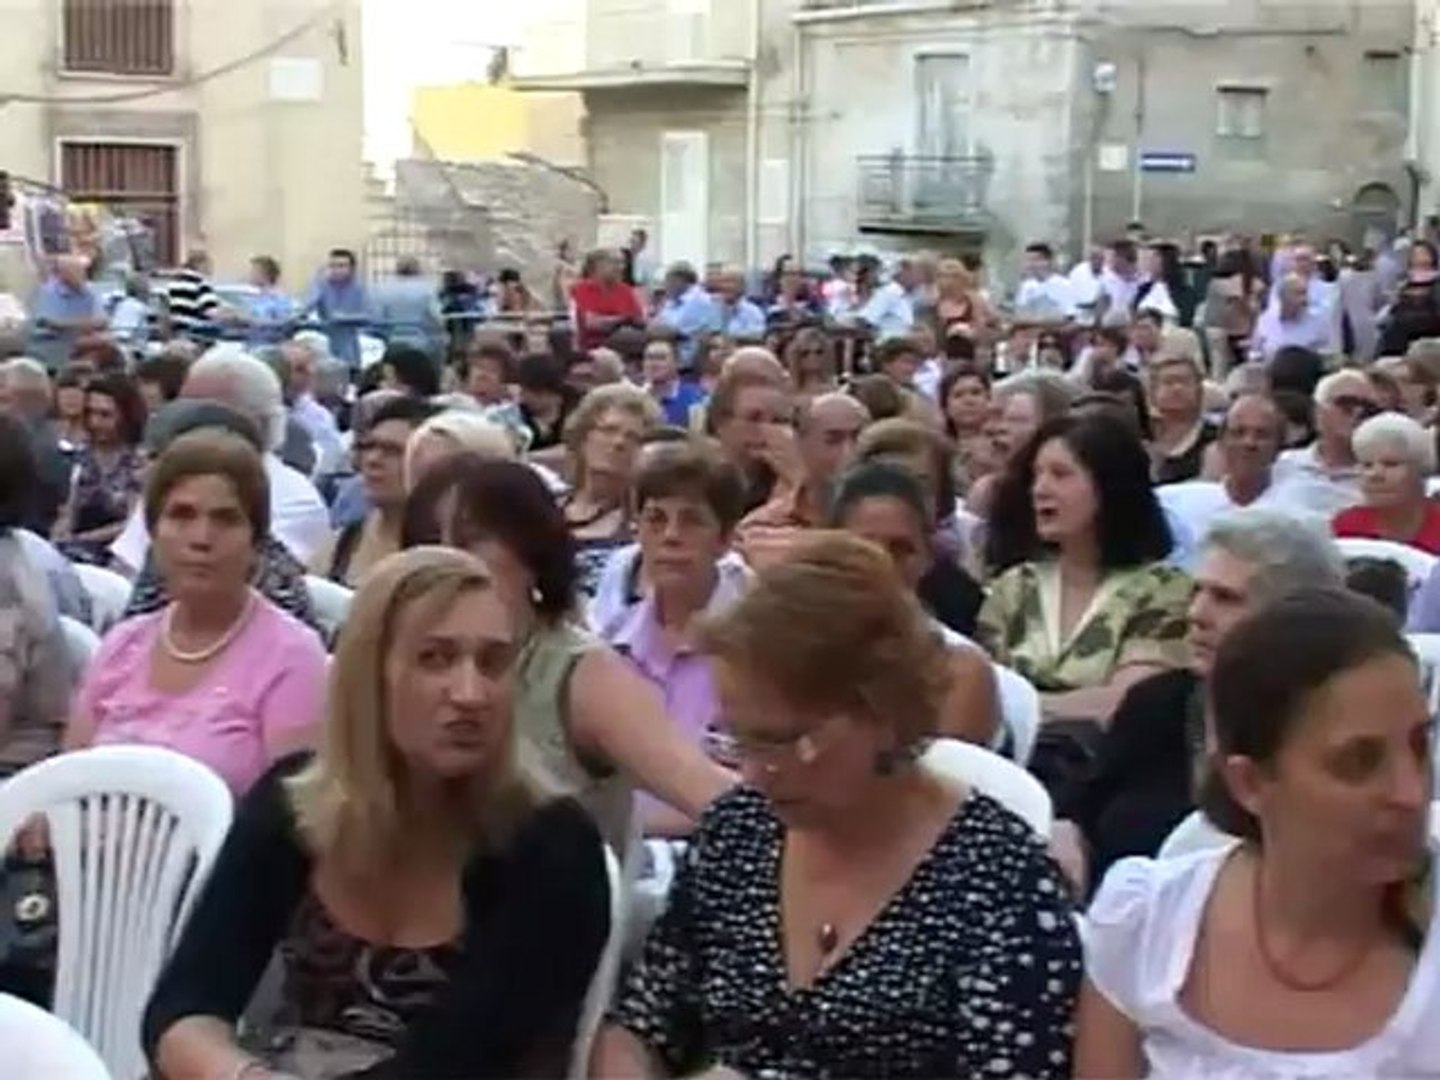 SICILIA TV FAVARA - Conclusi i festeggiamenti di San Calogero di Favara -  Video Dailymotion